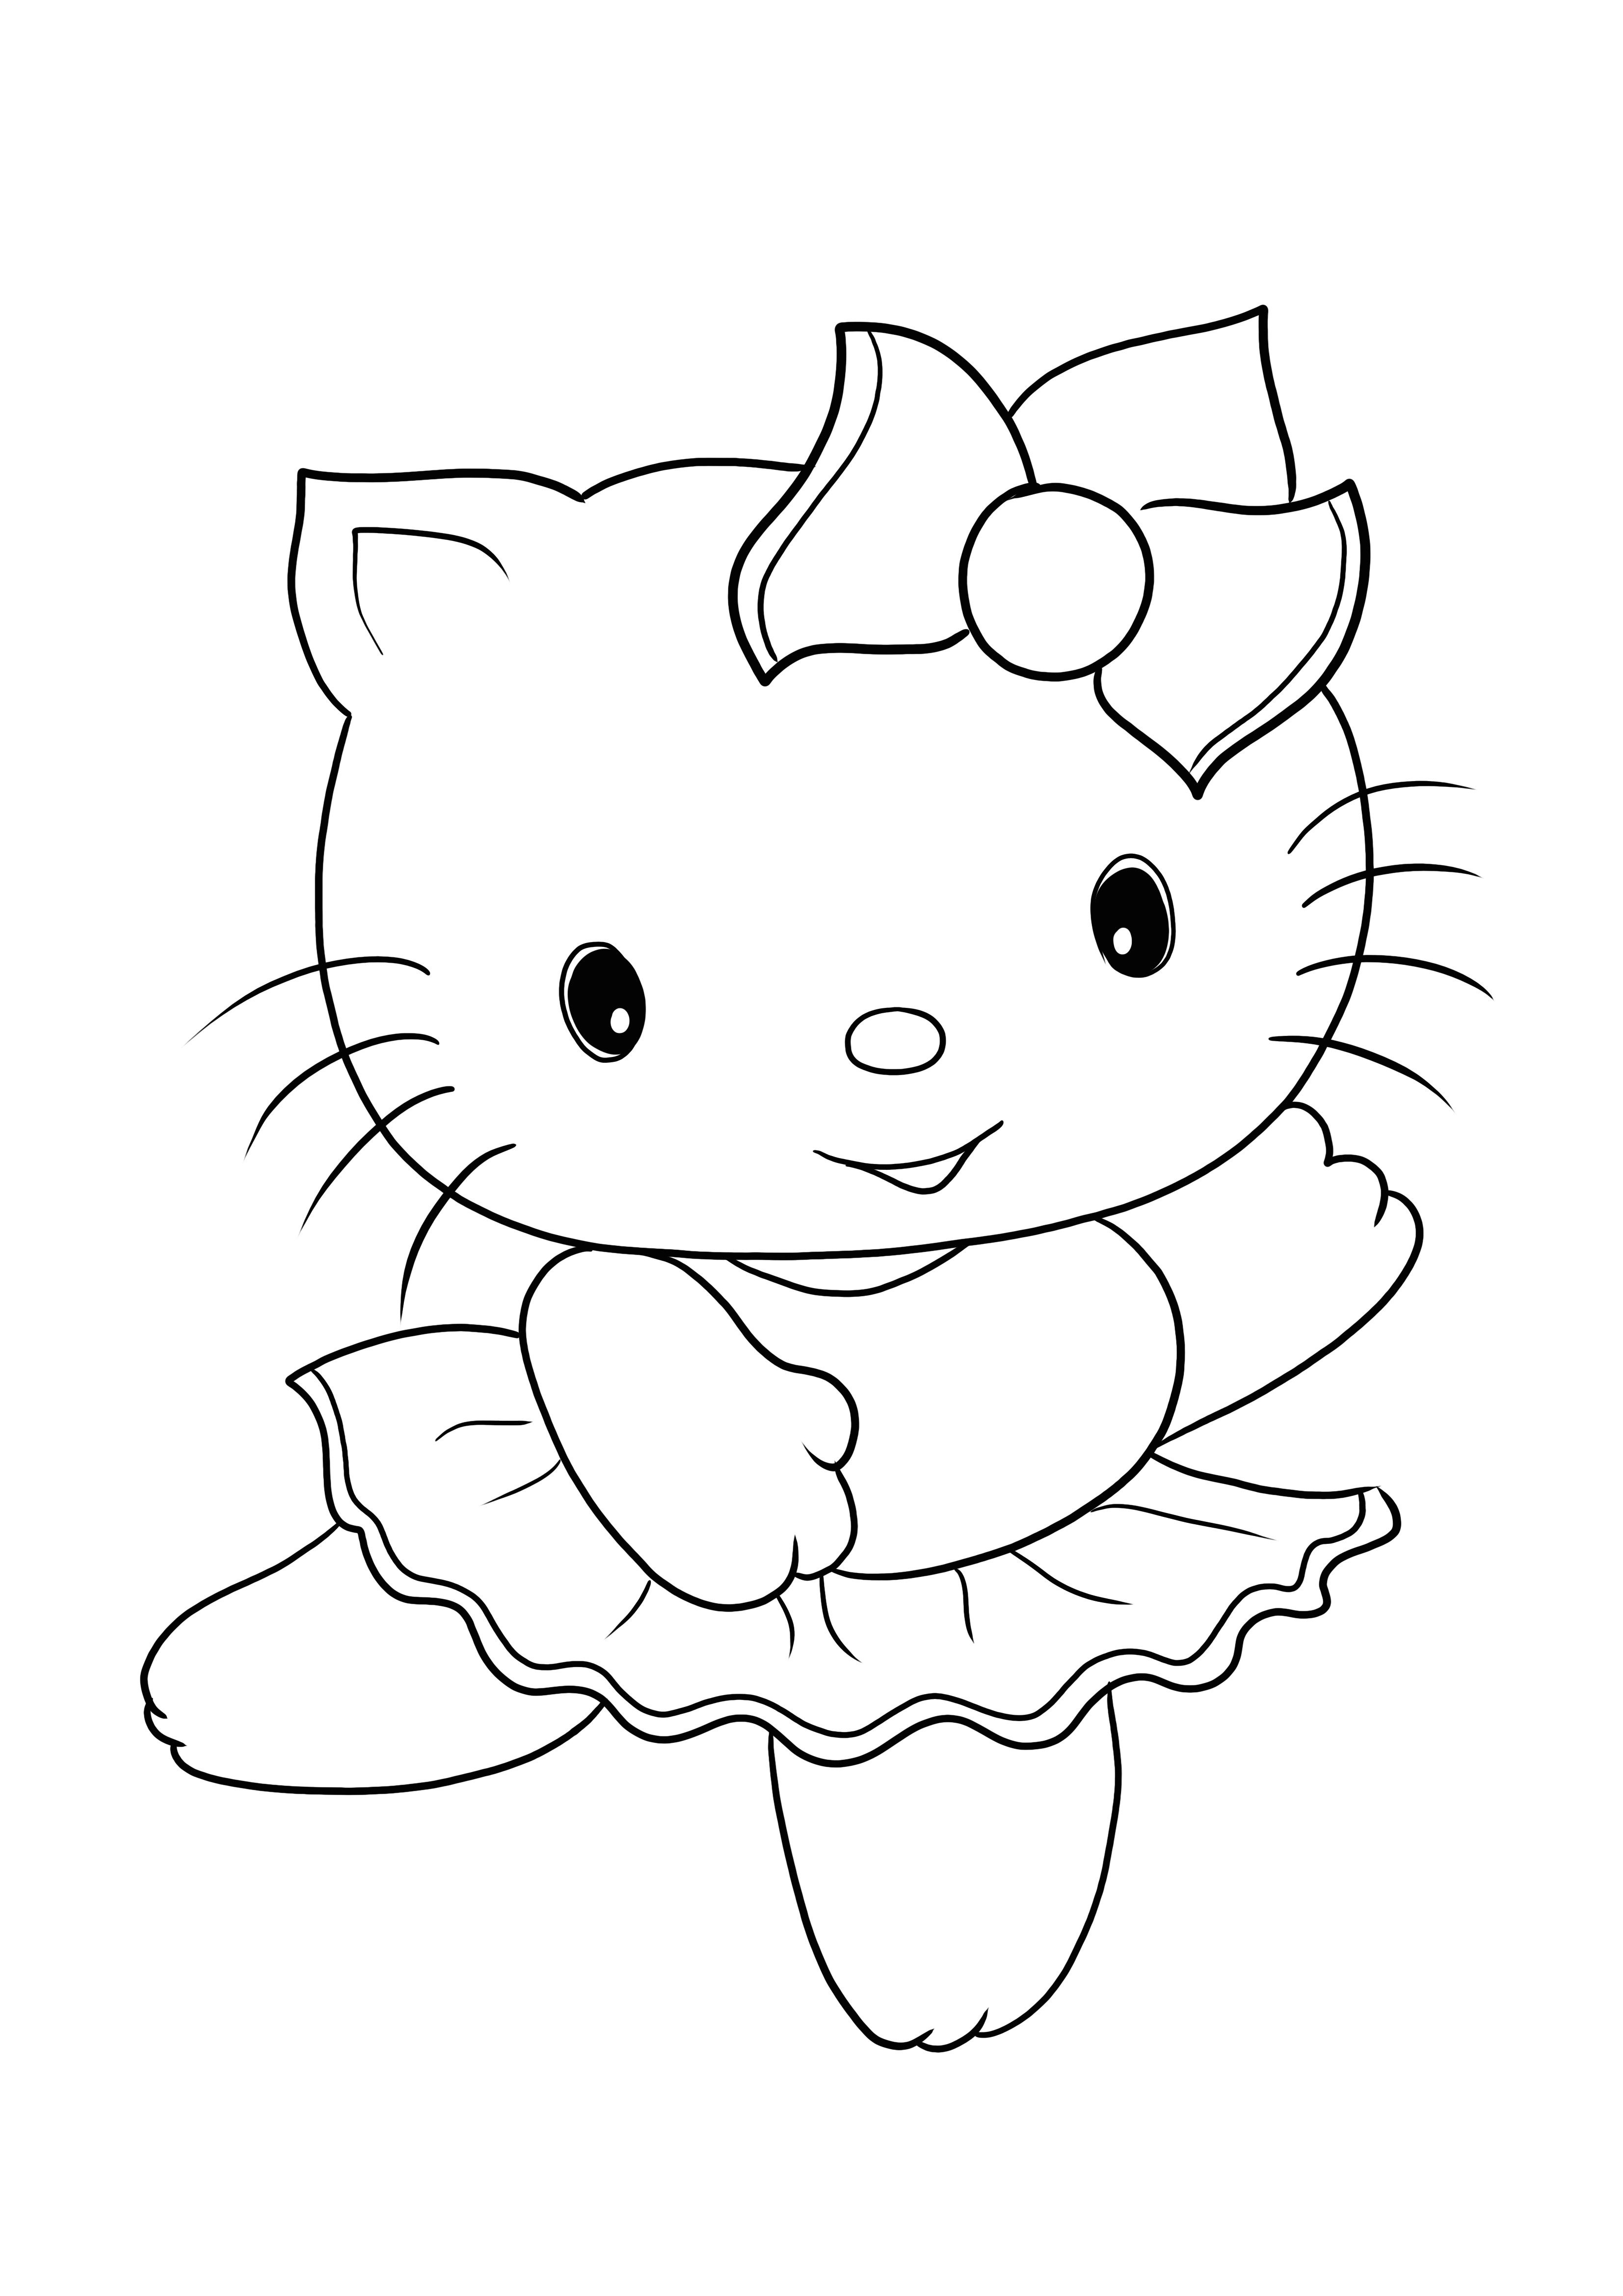 Aranyos Hello Kitty kép ingyenes nyomtatása és színezése minden korosztály számára